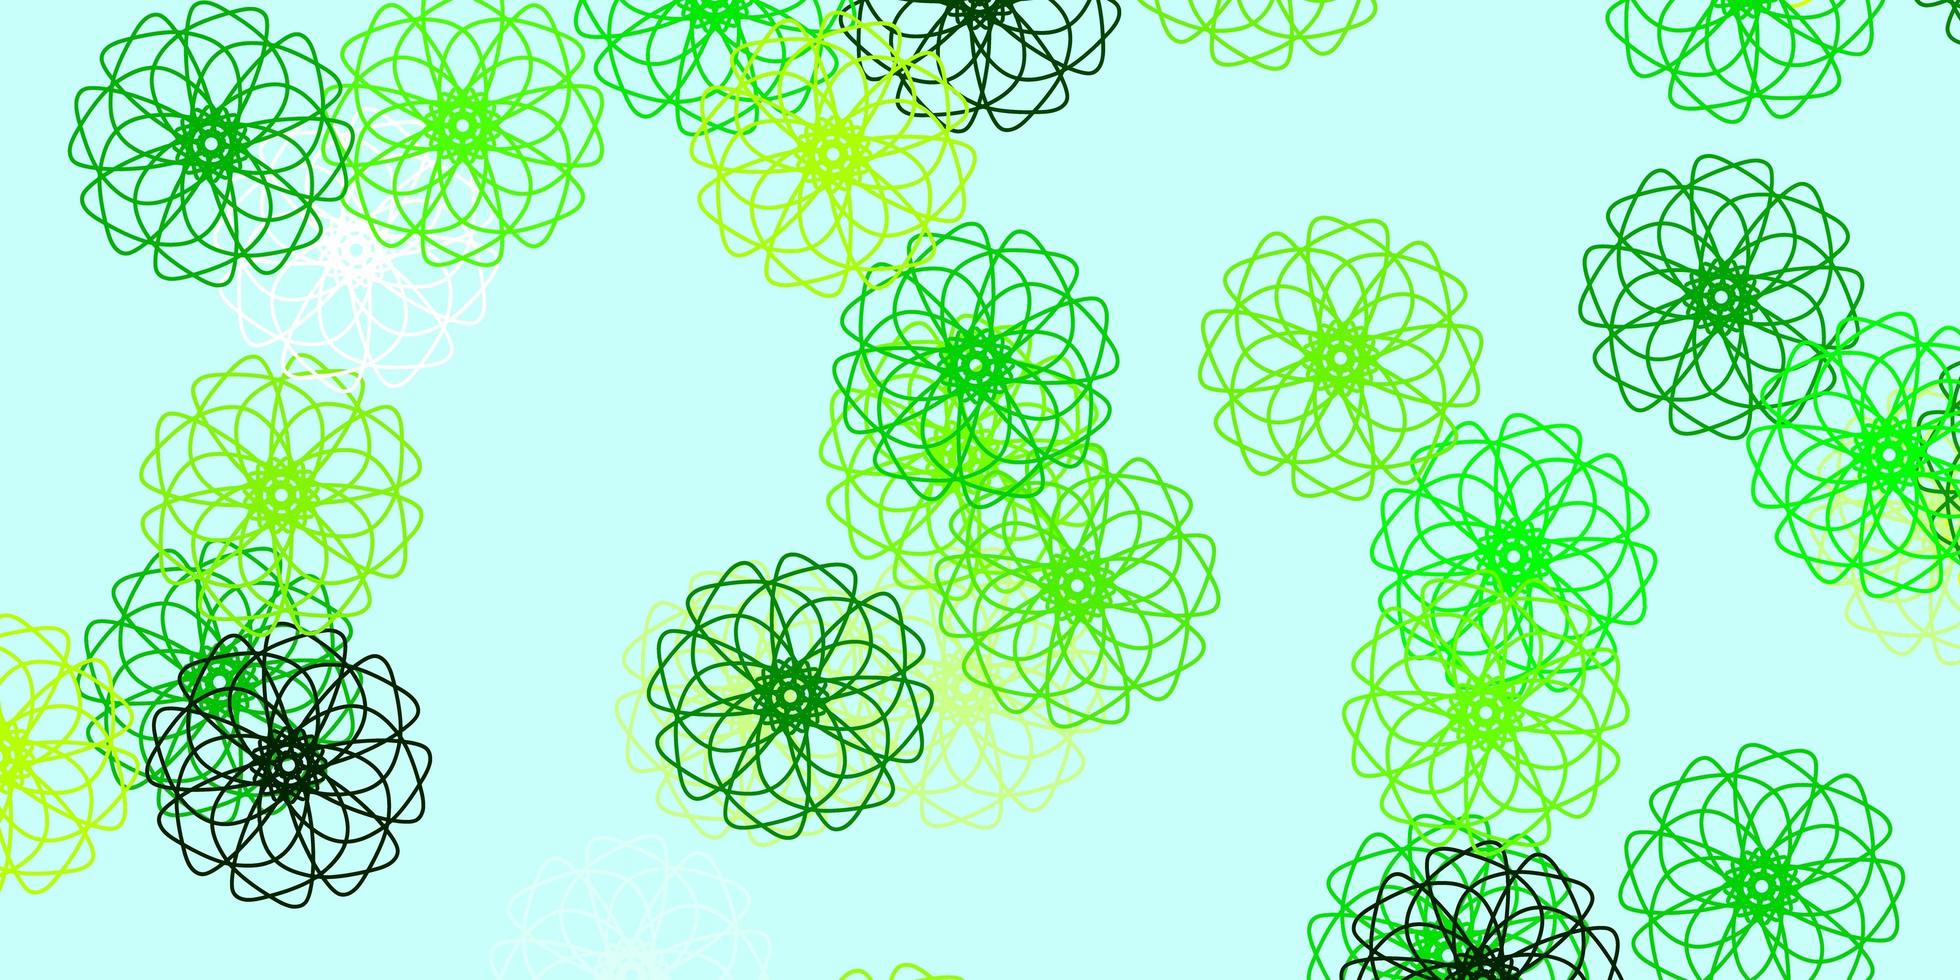 modelo de doodle de vetor verde e amarelo claro com flores.